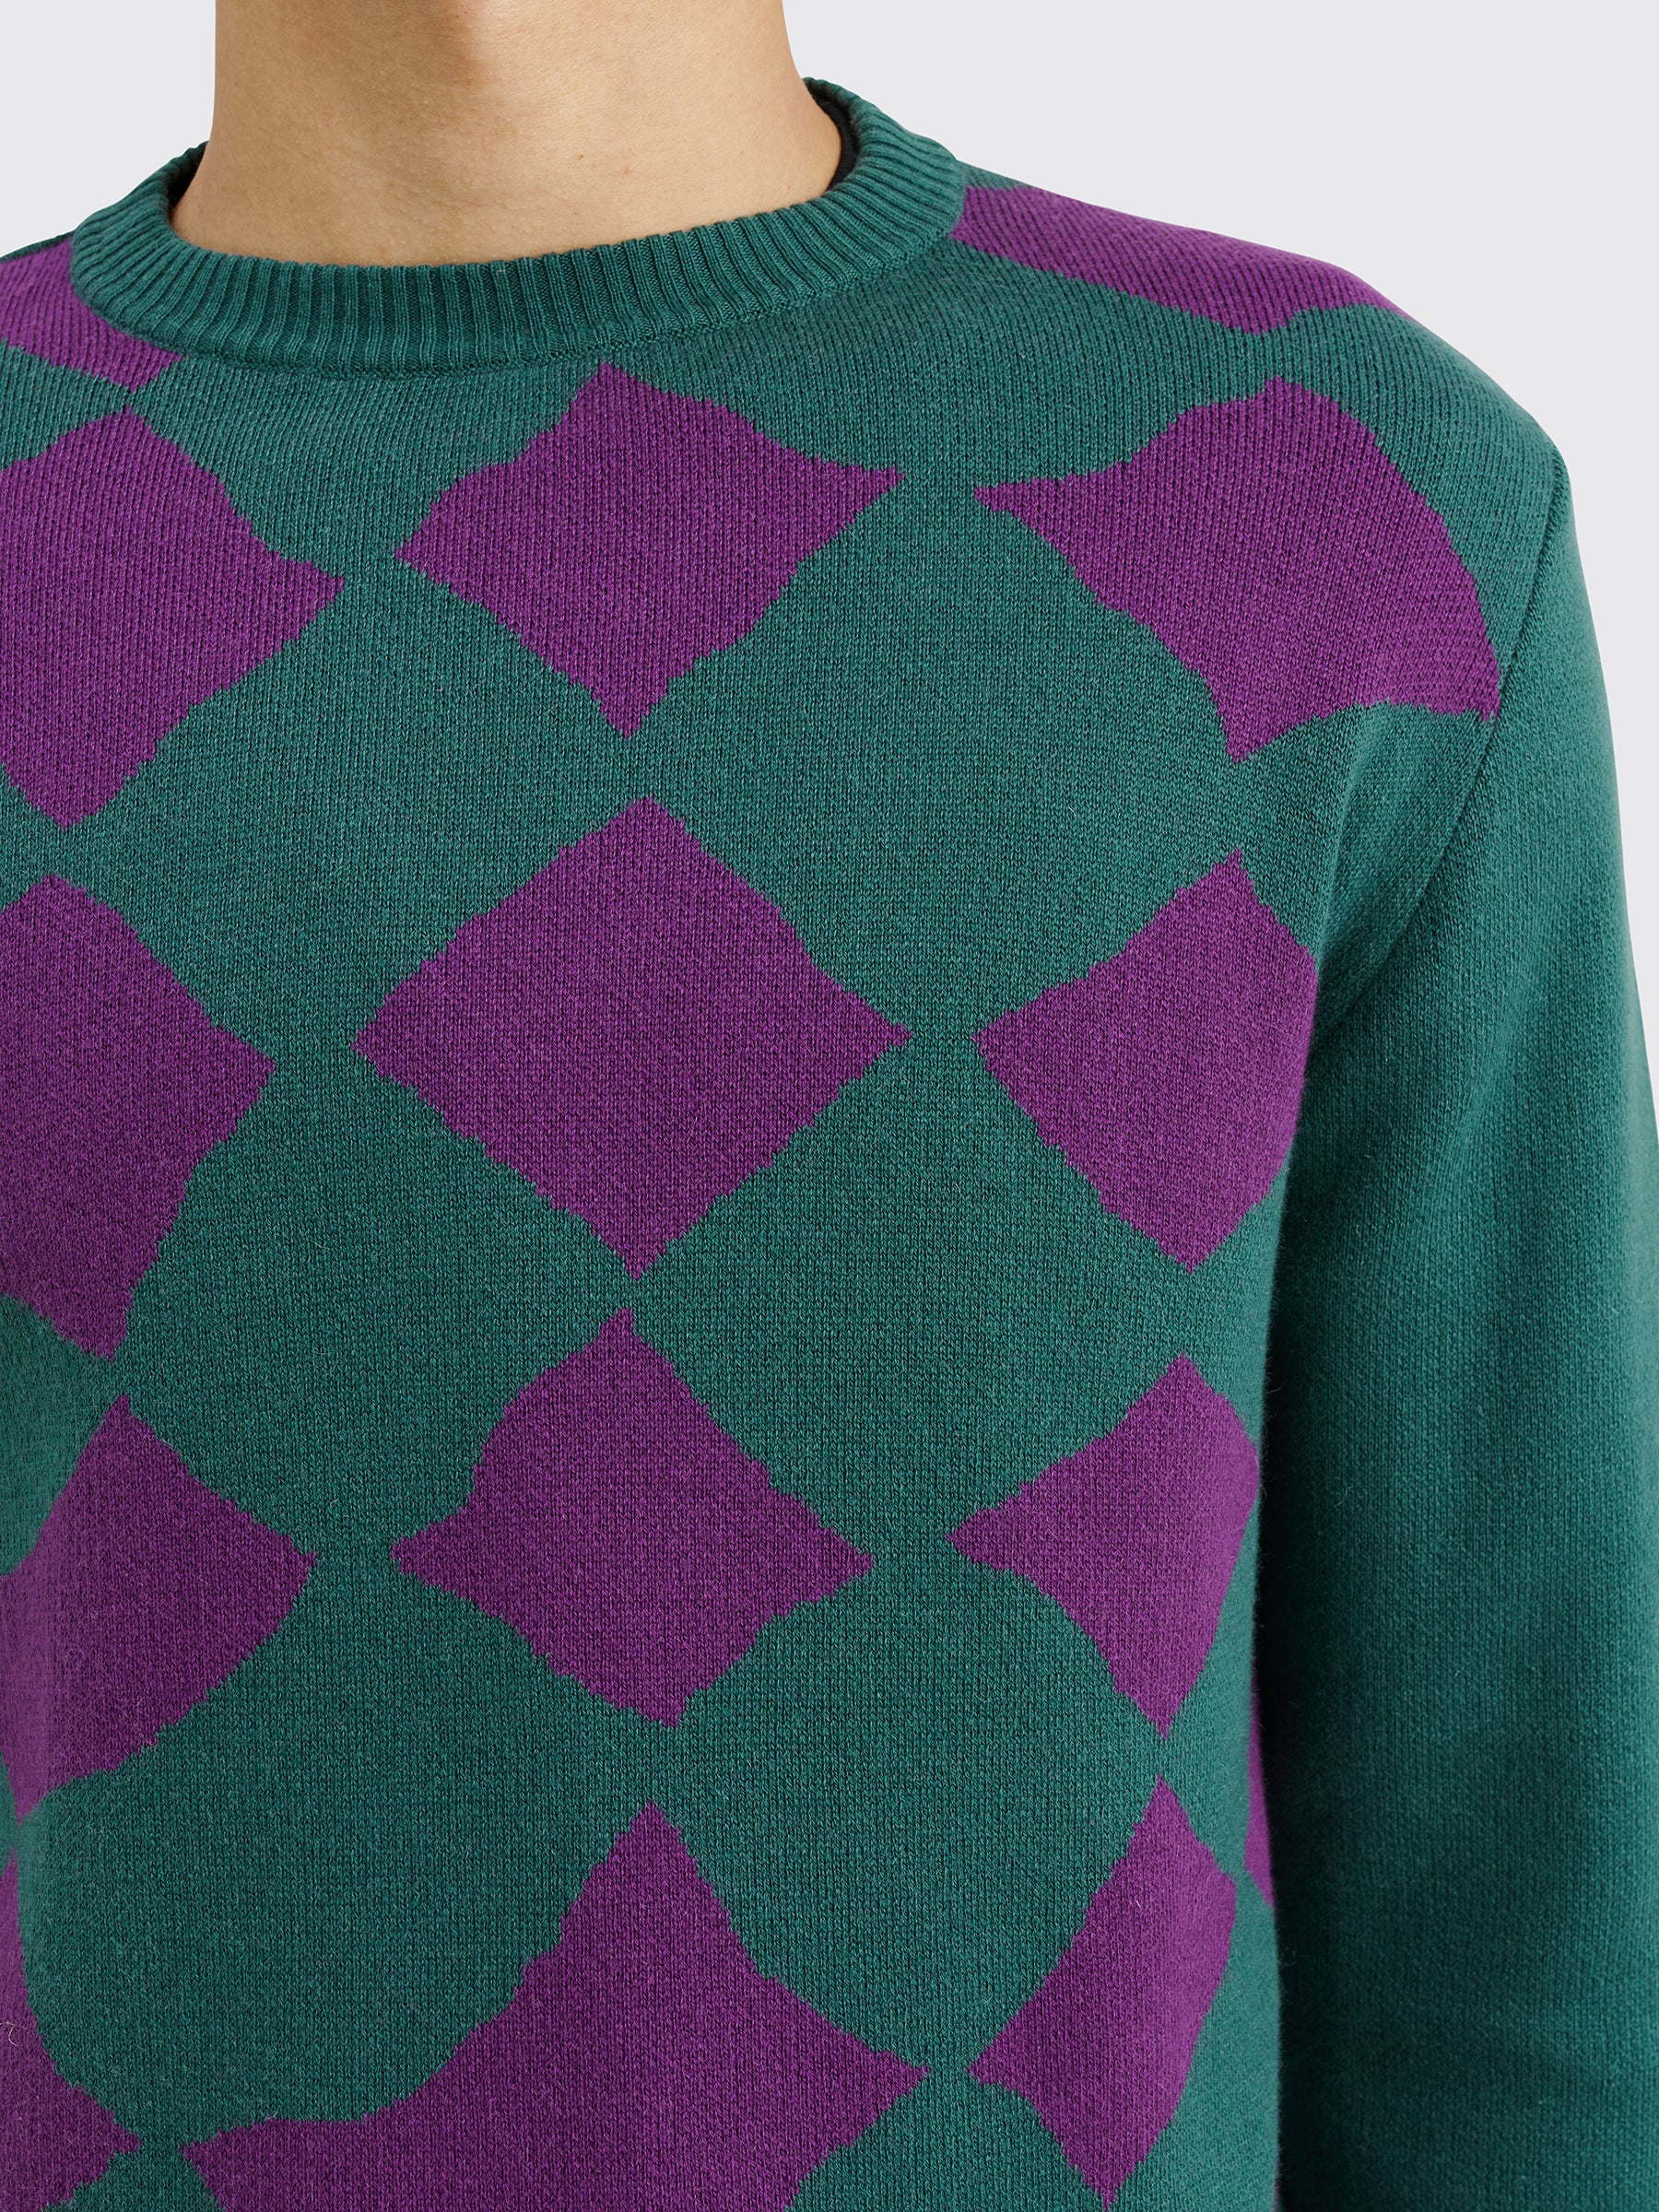 TRÈS BIEN everywear Pattern Knitted Sweatshirt Cotton Cashmere Green / Purple